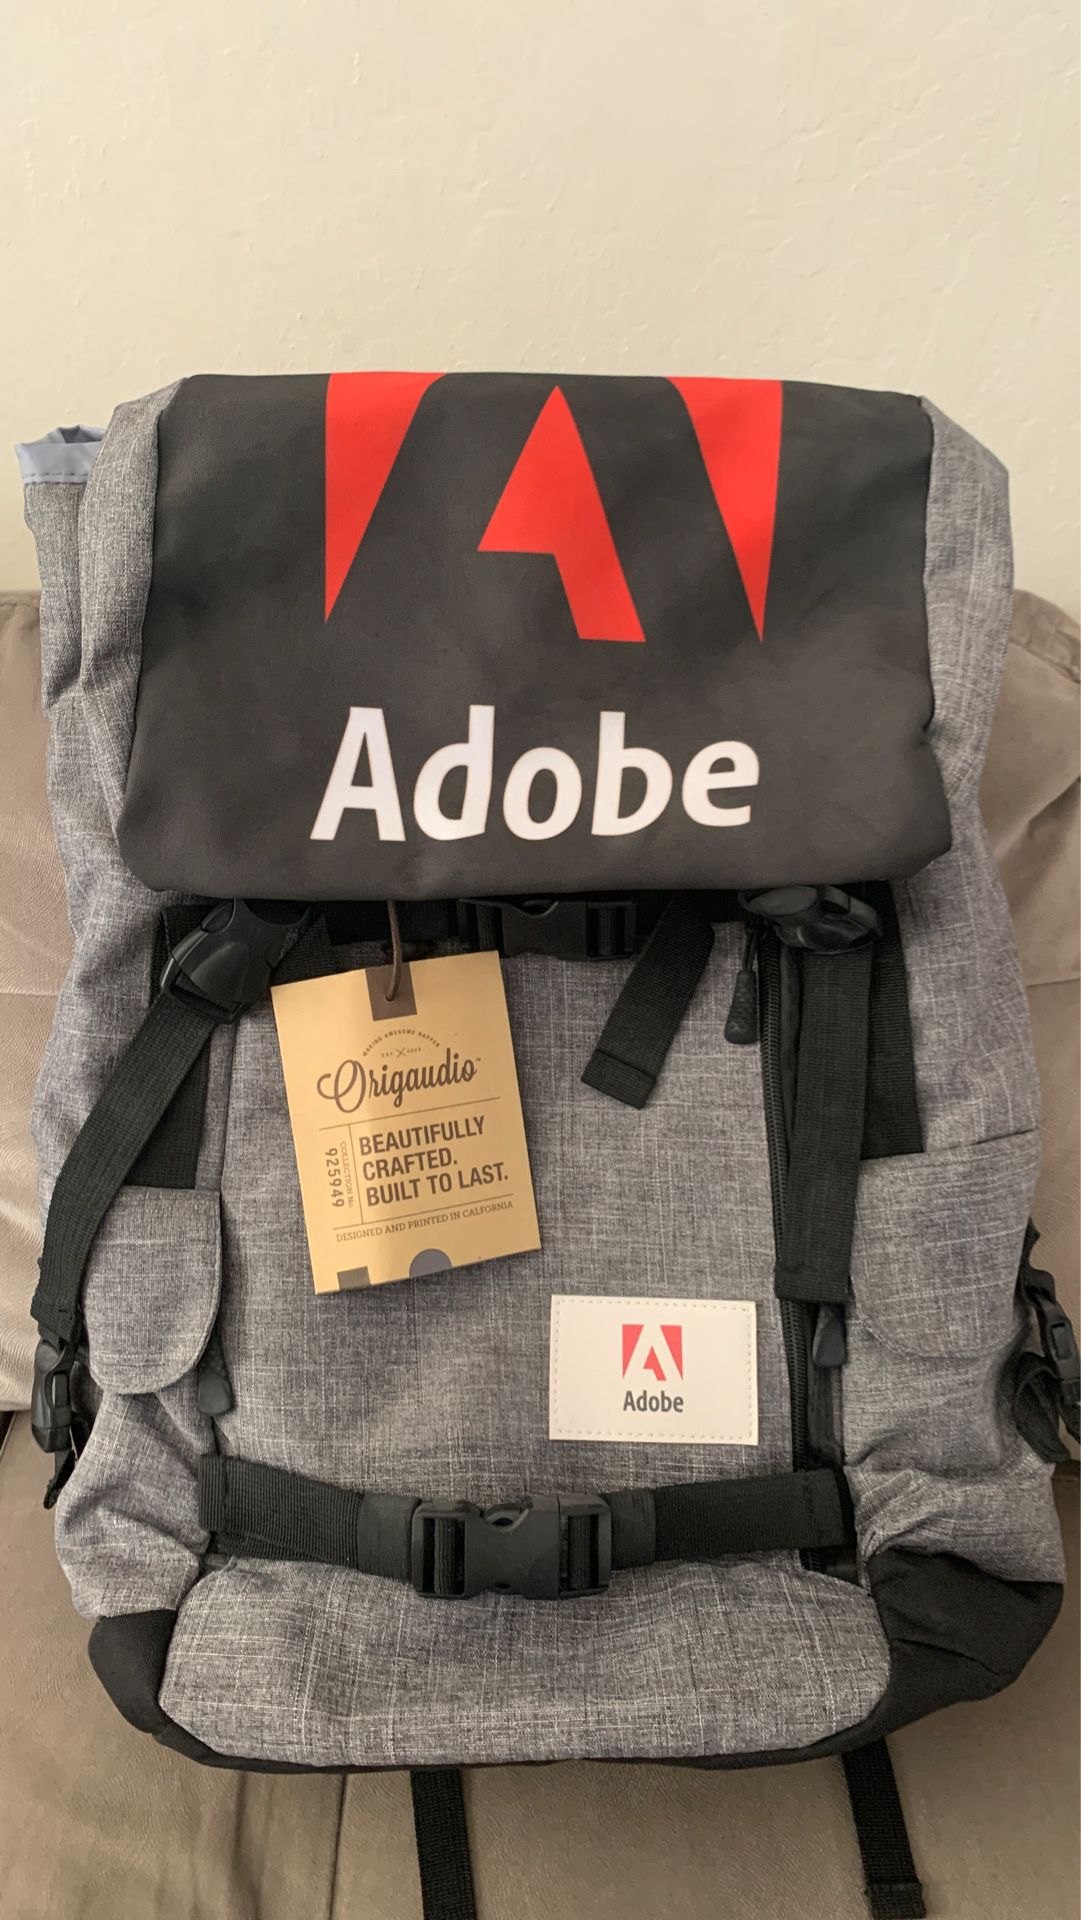 New Origaudio Adobe backpack